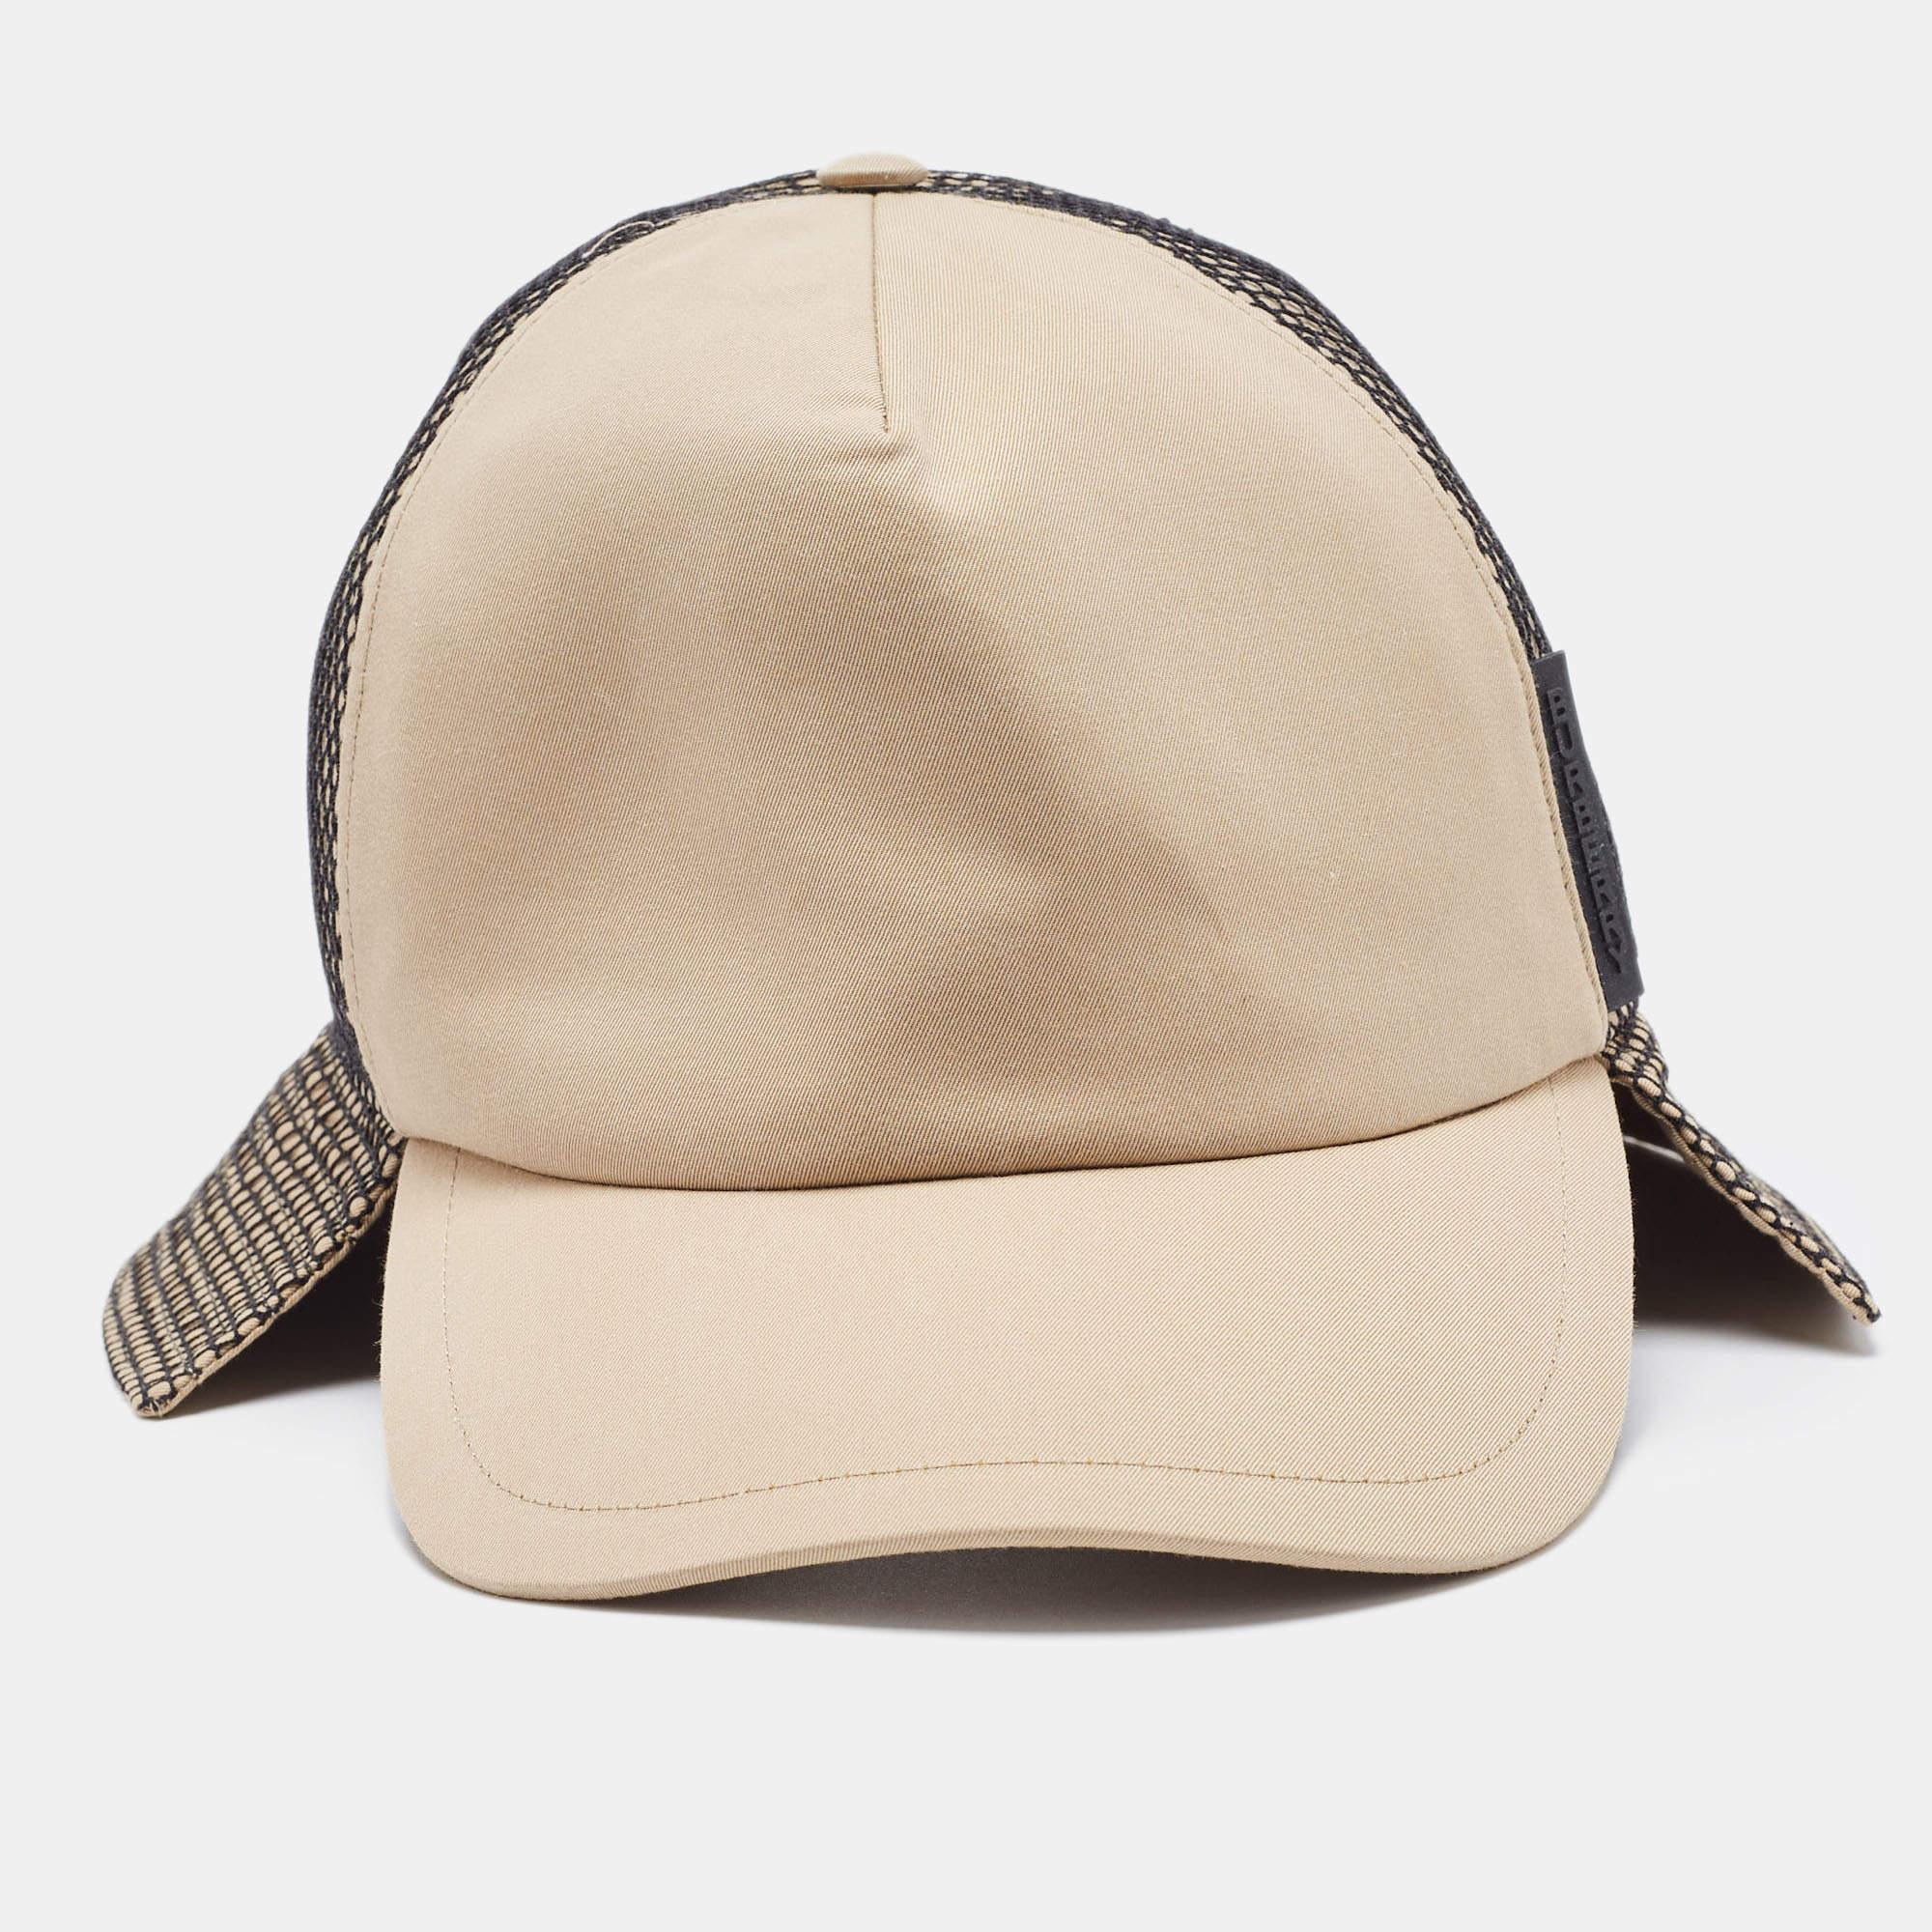 Cousue à partir de matériaux nobles, cette casquette de baseball Burberry est un accessoire chic. Il présente un aspect luxueux et une coupe confortable.

Mesures : Circonférence : 58 cm ; bord : 7 cm

Comprend :  Etiquette de marque